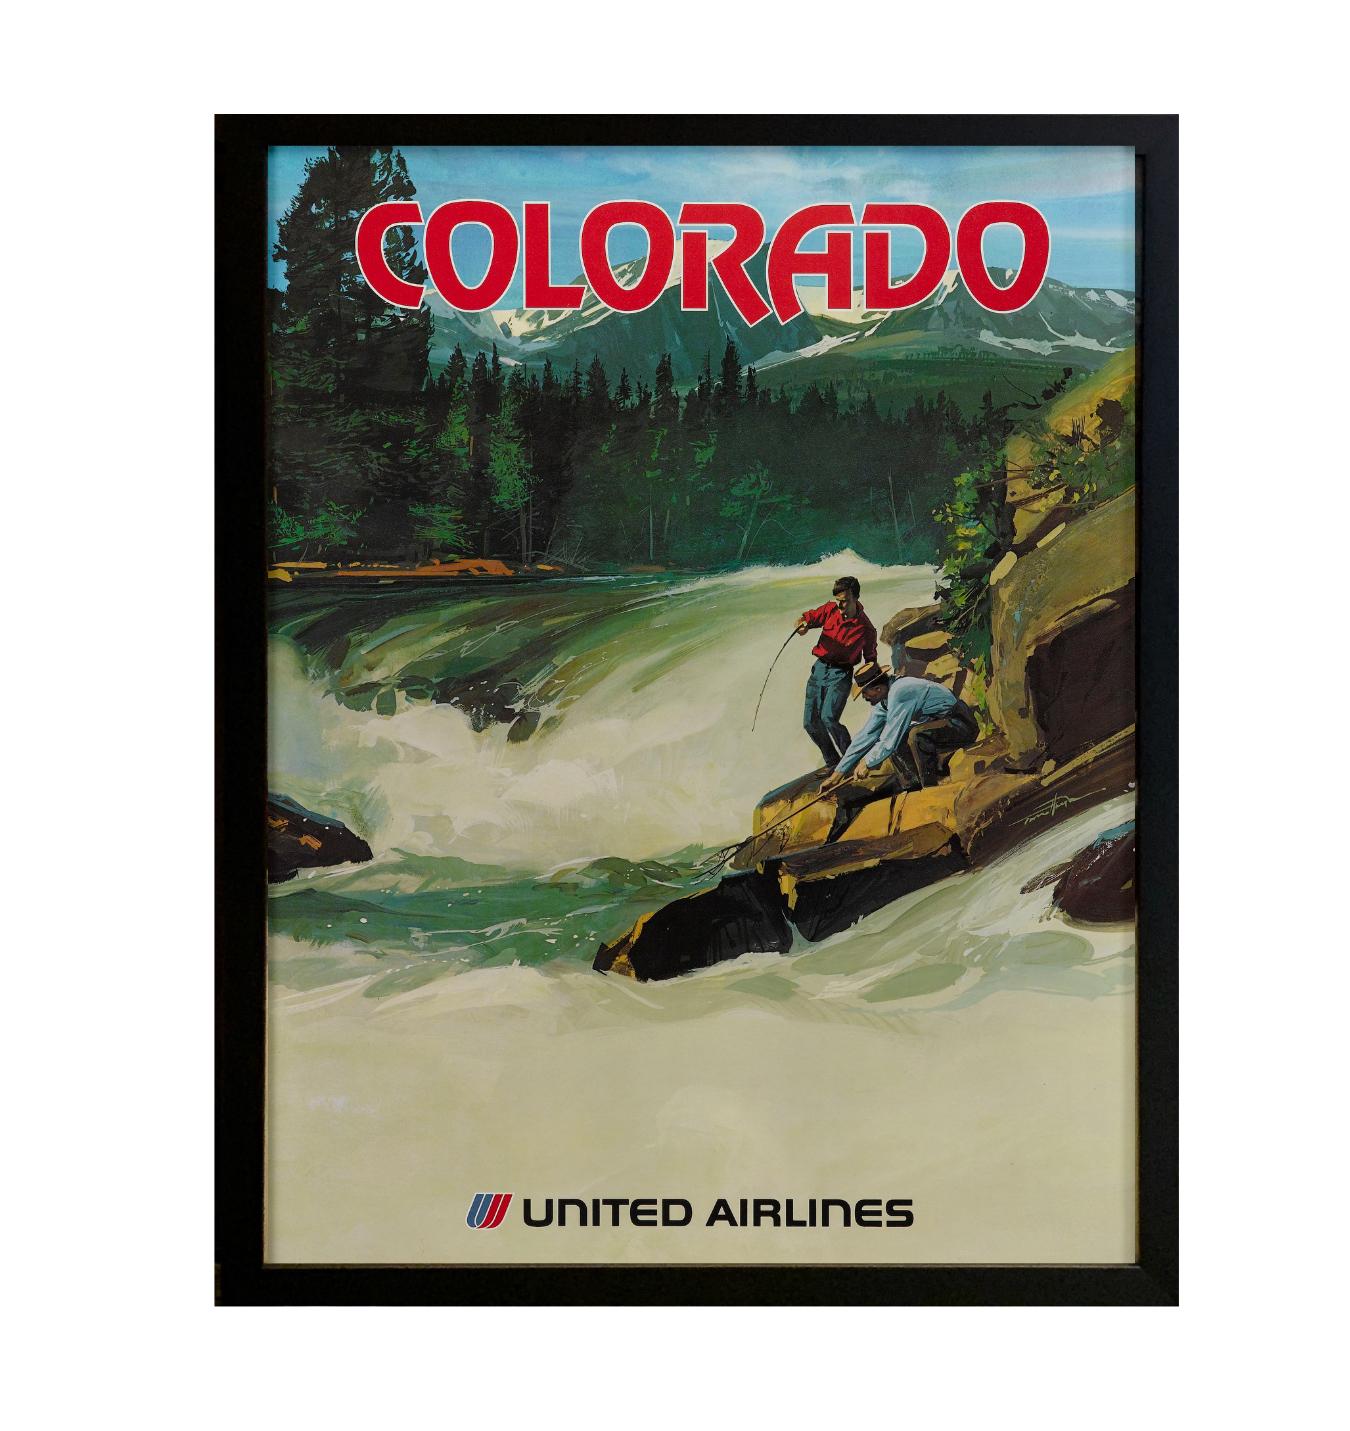 Angeboten wird ein Vintage-Reiseplakat für United Airlines aus den 1970er Jahren. Dieses Werbeplakat zeigt Colorado als eines der verlockenden Reiseziele von United Airlines. Das Design zeigt zwei Männer beim Angeln an einem rauschenden Fluss,